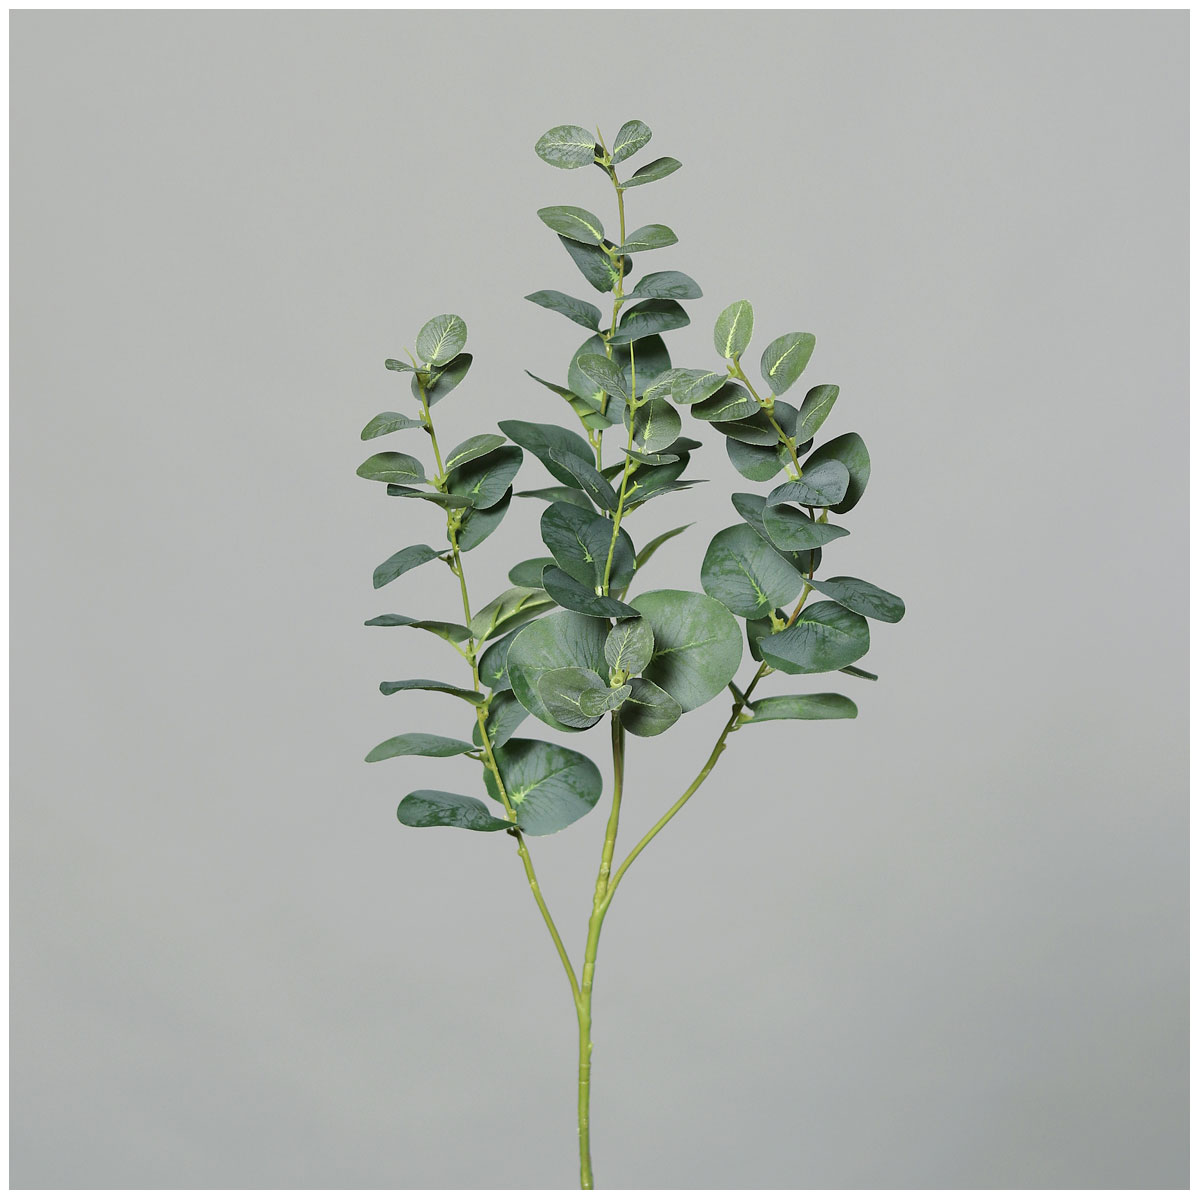 | green 92 Eukalyptuszweig 522229 cm